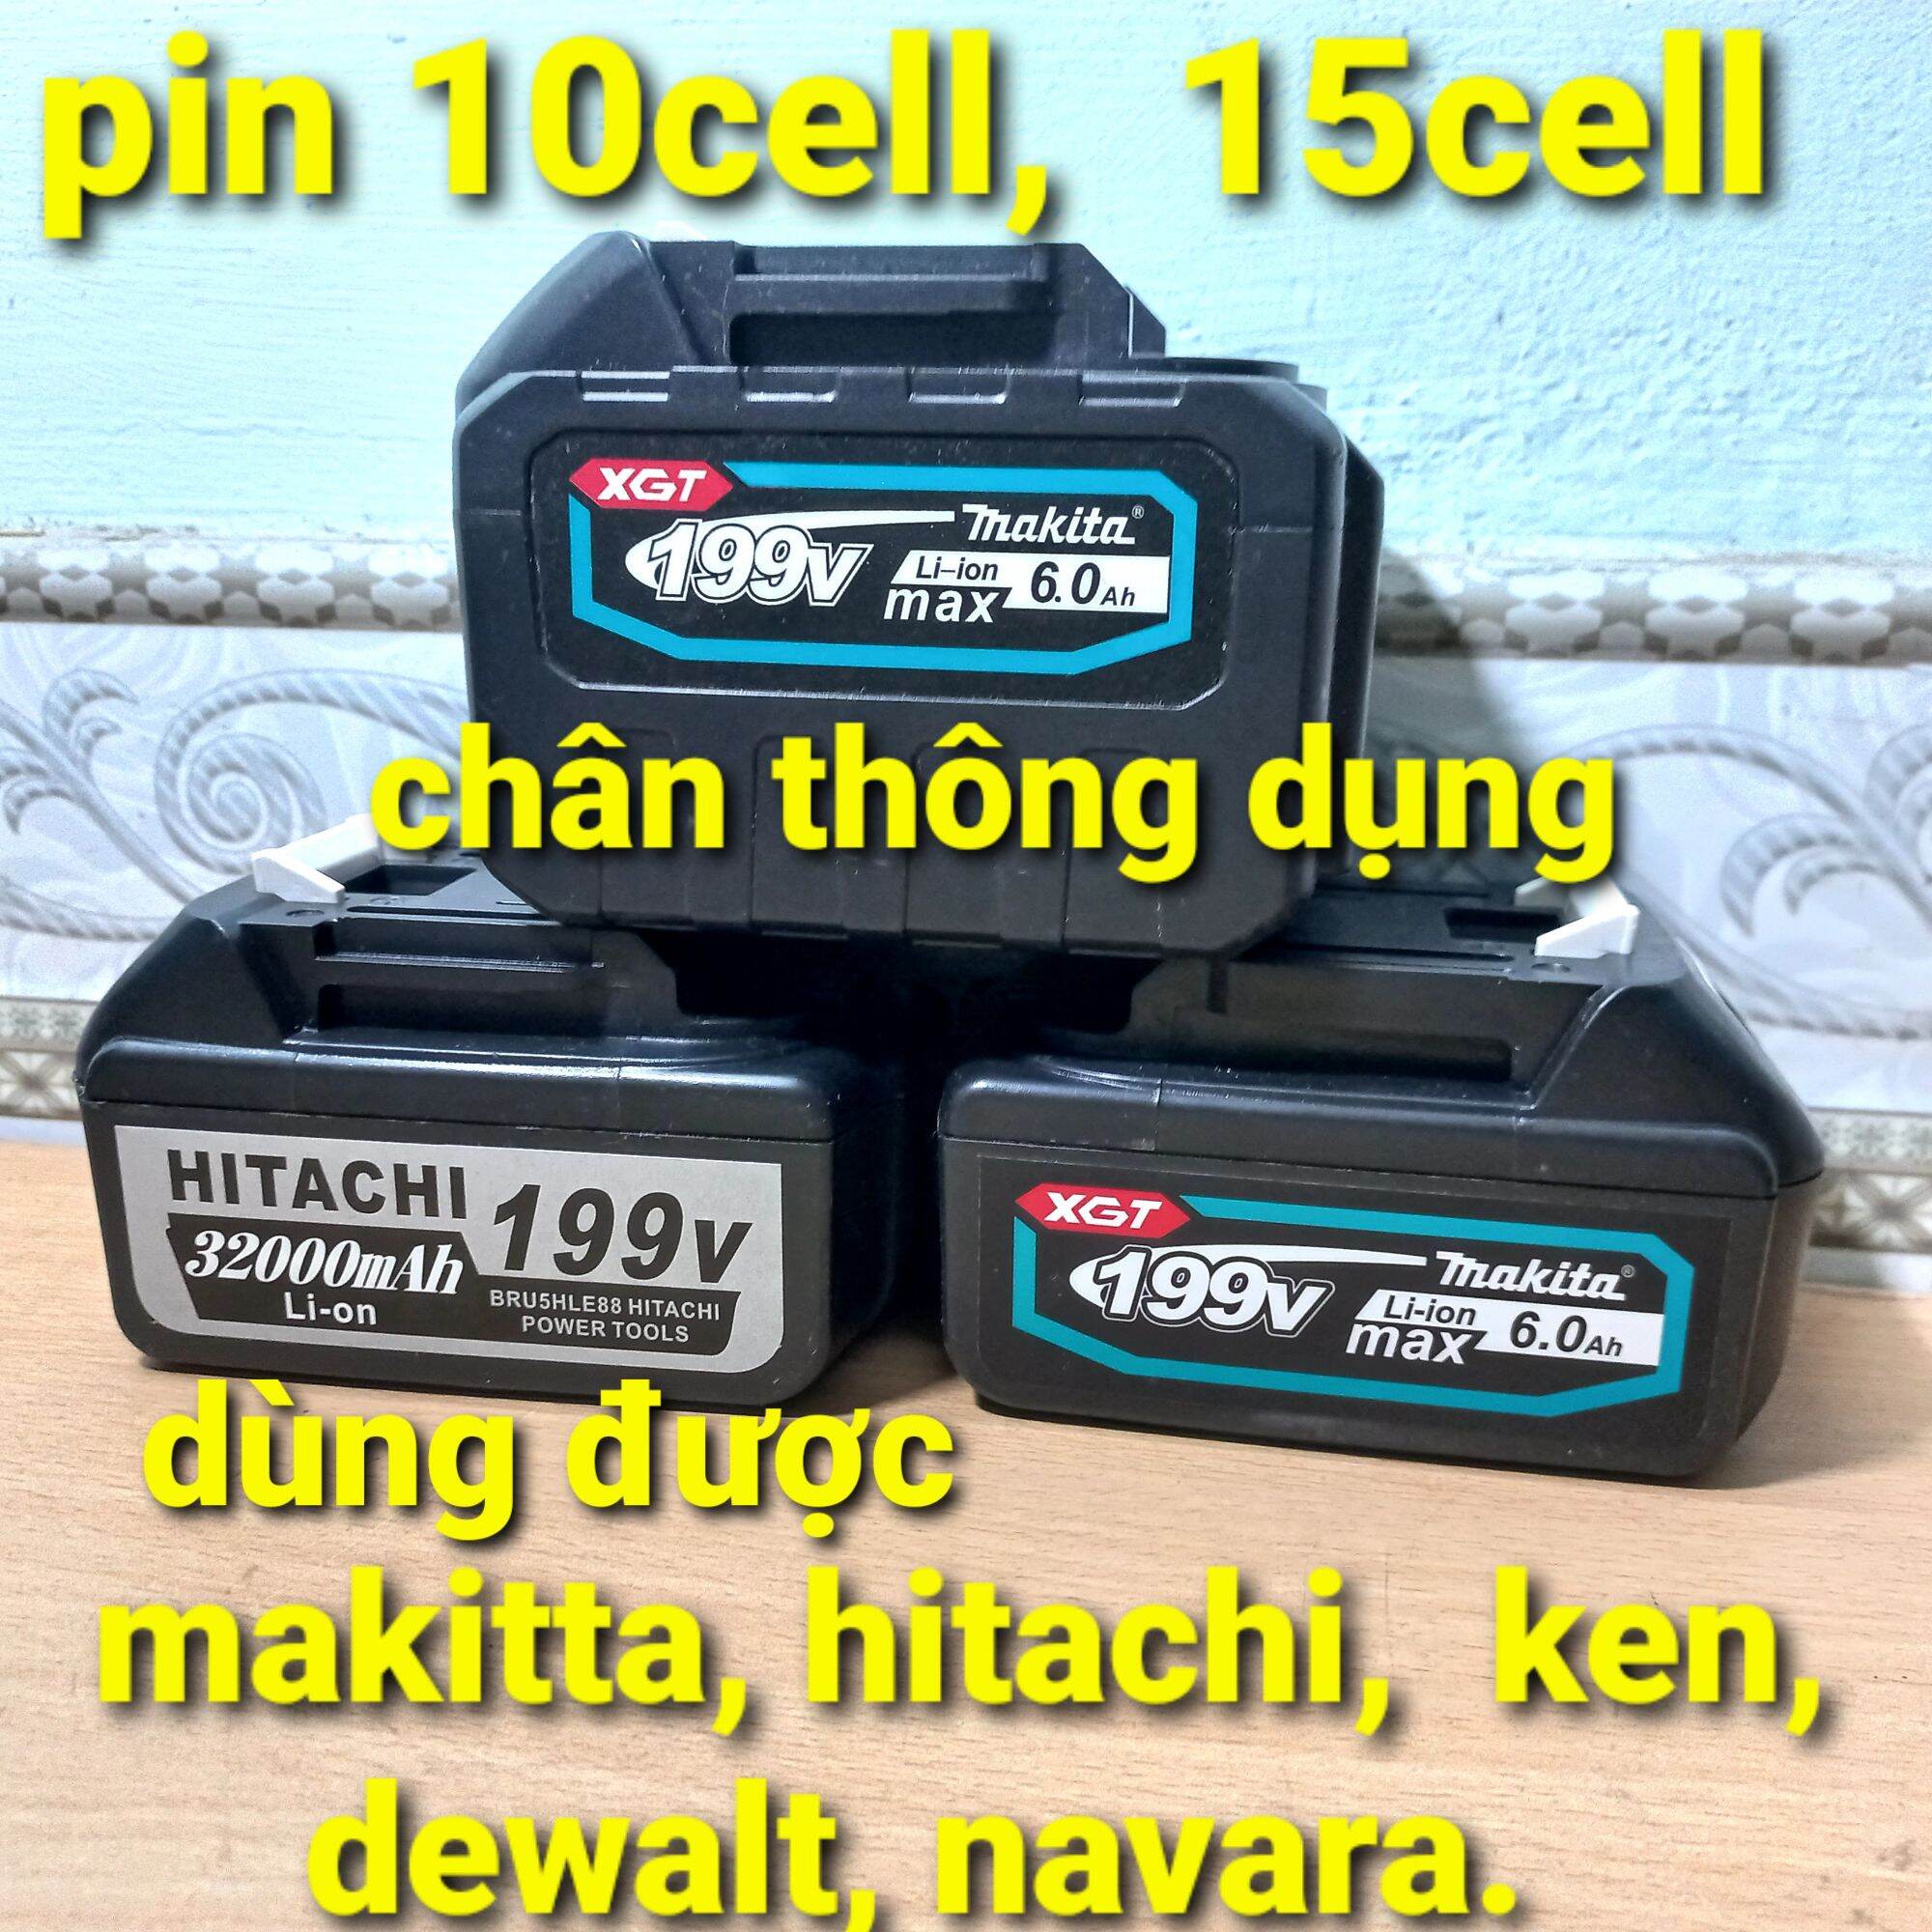 pin 5cell, pin10cell, pin 15cell chân thông dụng dùng cho máy khoan makita, DEWALT, makita, hitachi, dewalt...